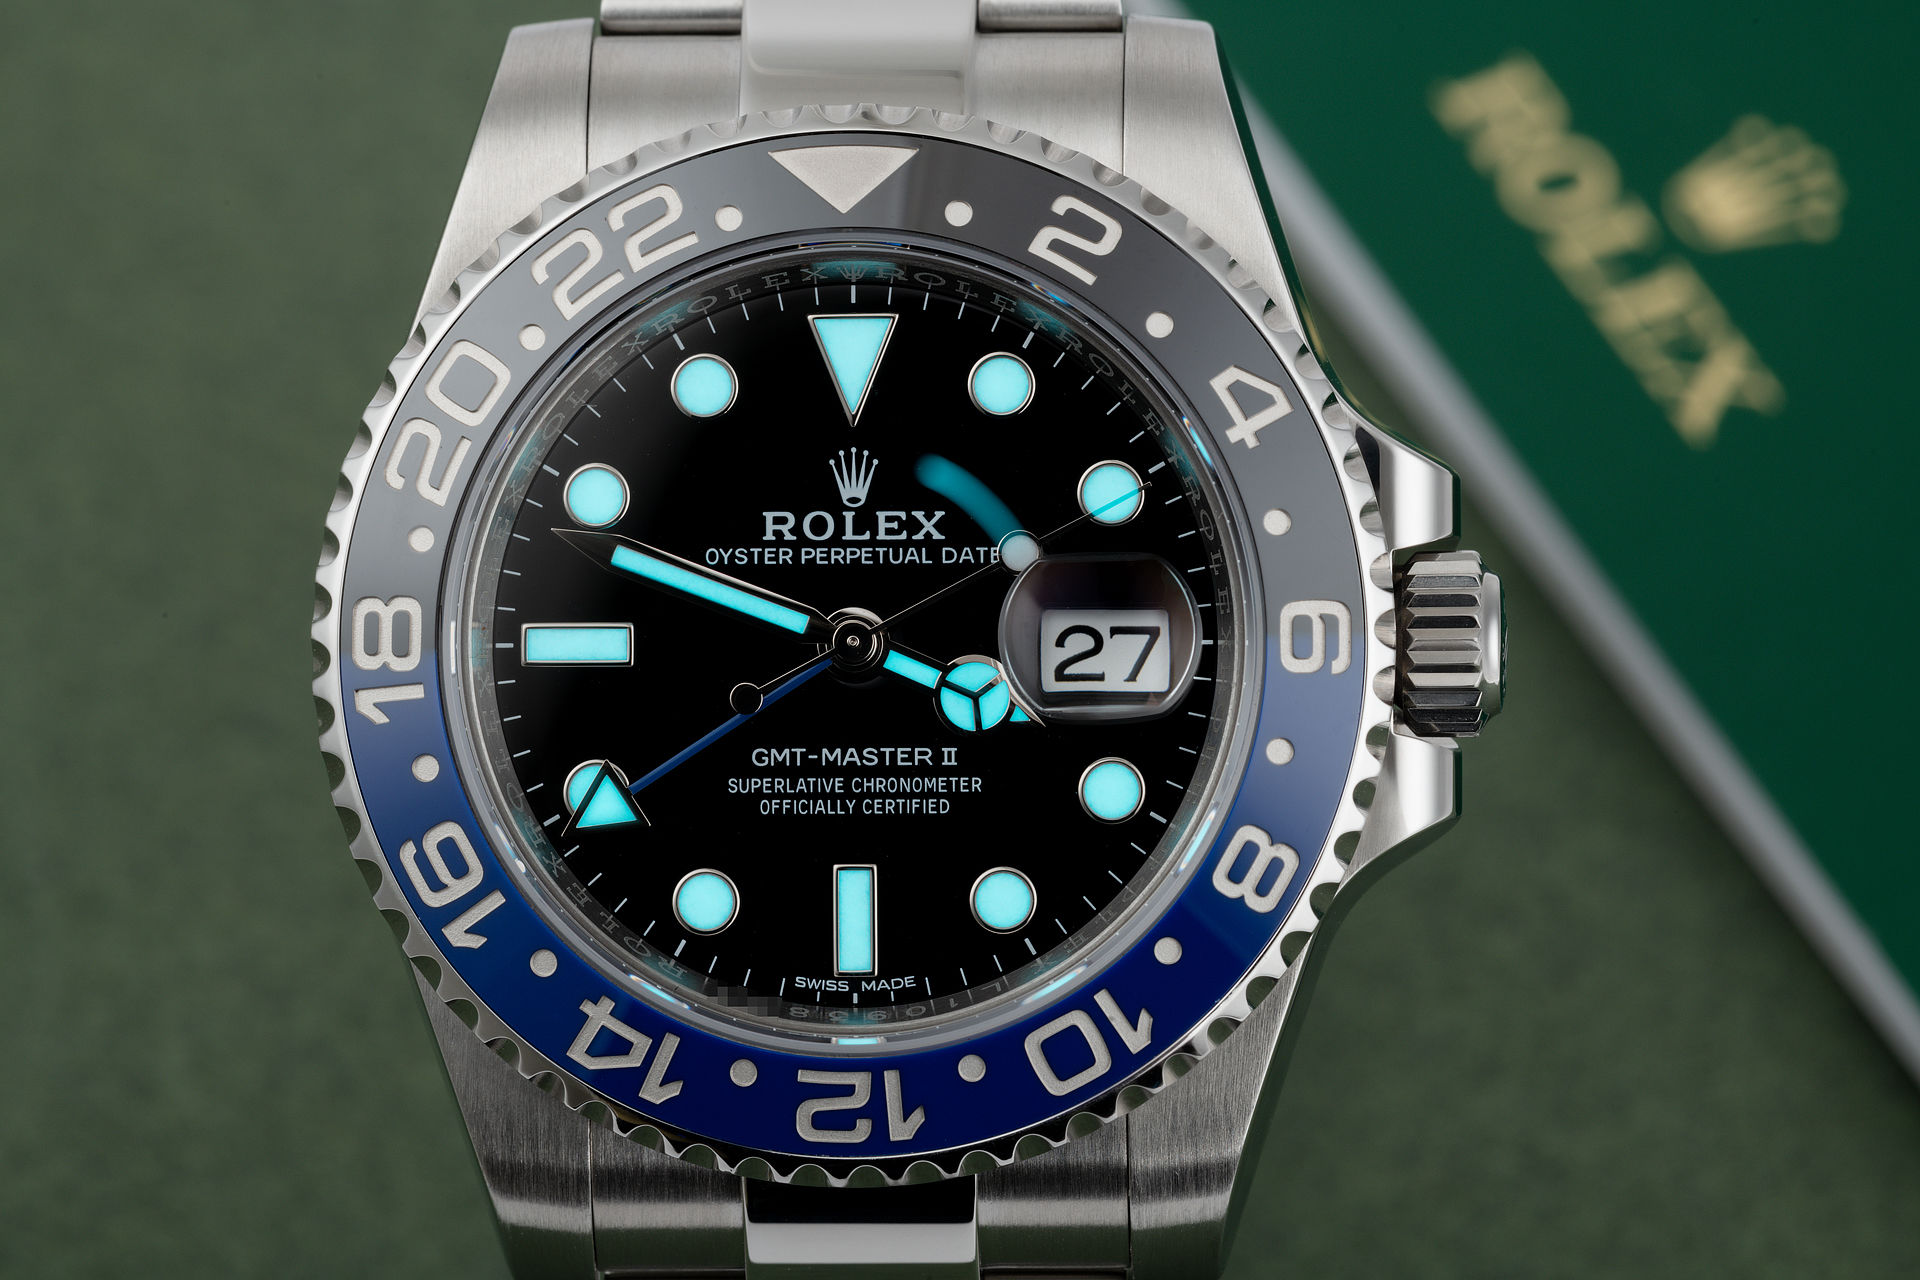 ref 116710BLNR | Under Rolex Warranty  | Rolex GMT-Master II